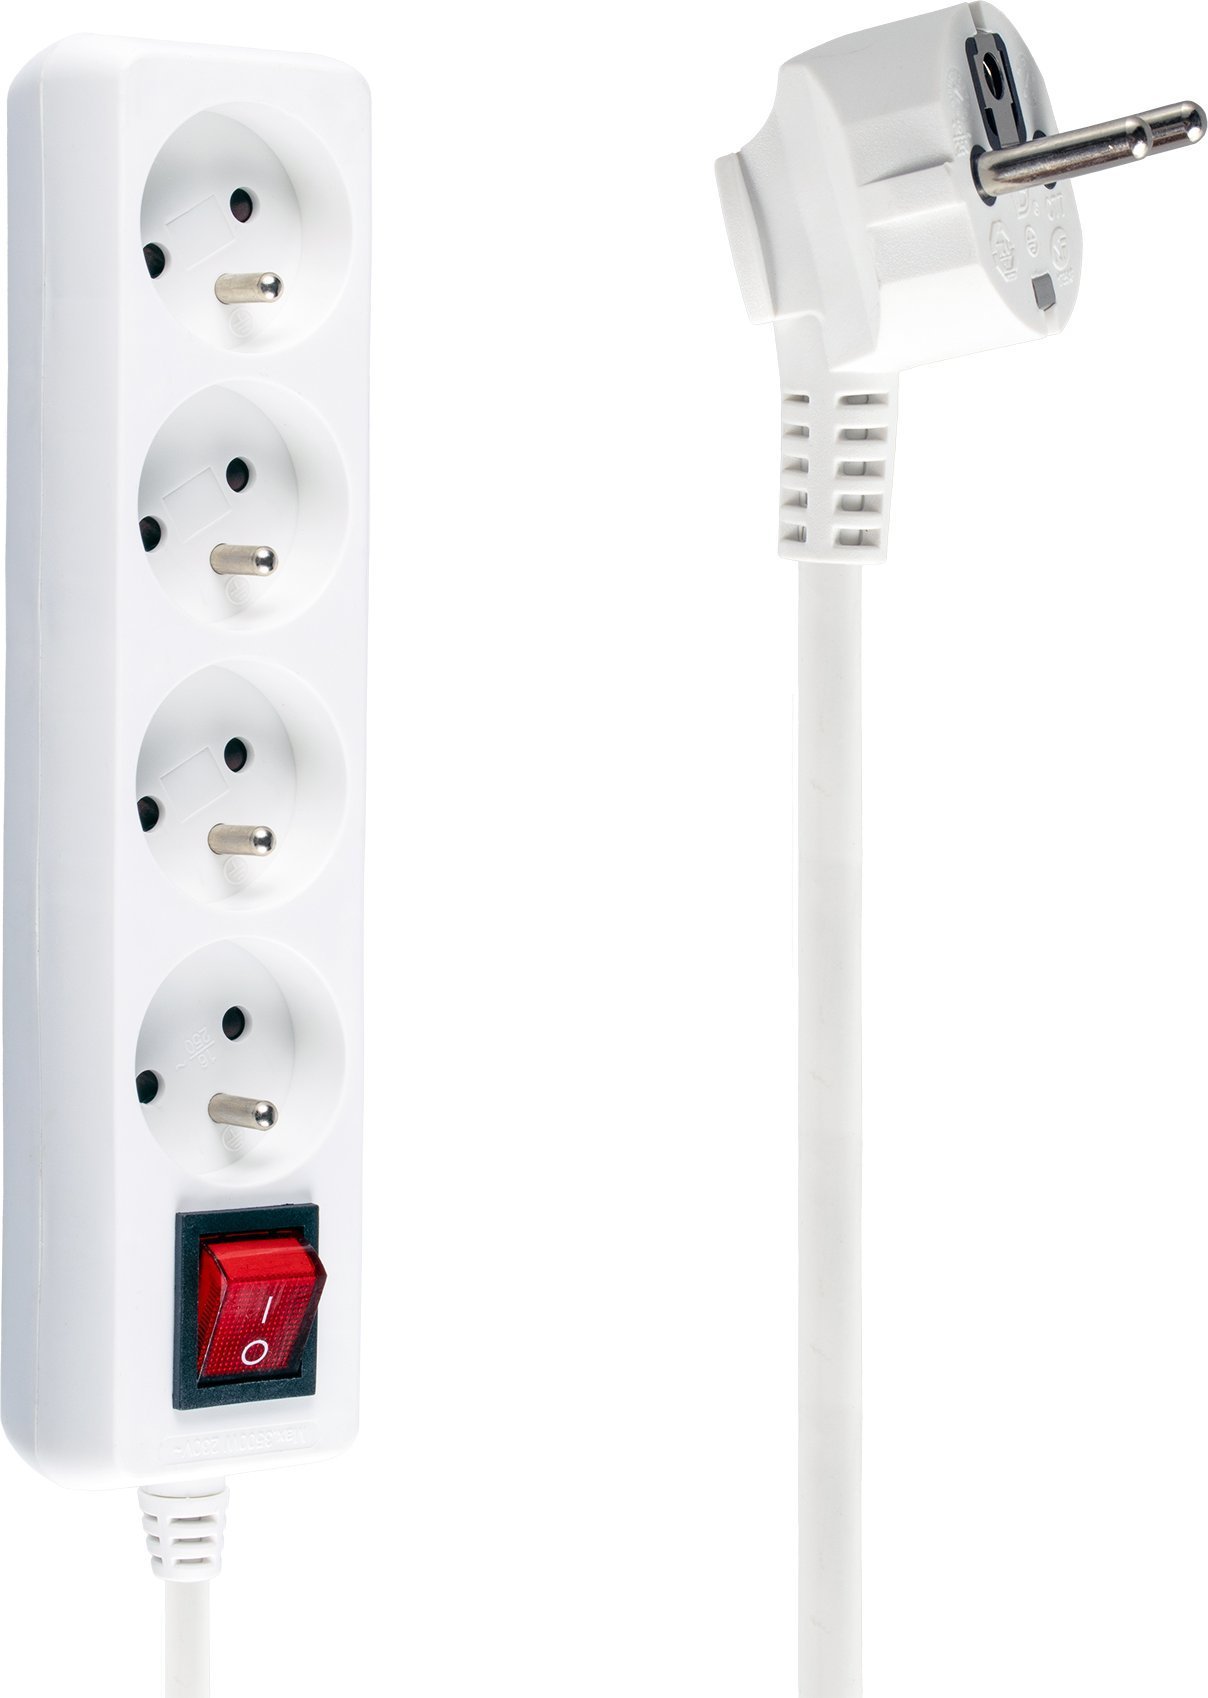 PDU - Prelungitor electric cu cablu cu protectie supraincalzire si intrerupator , Libox , LB0083/5 ,4 prize , 5 m , alb